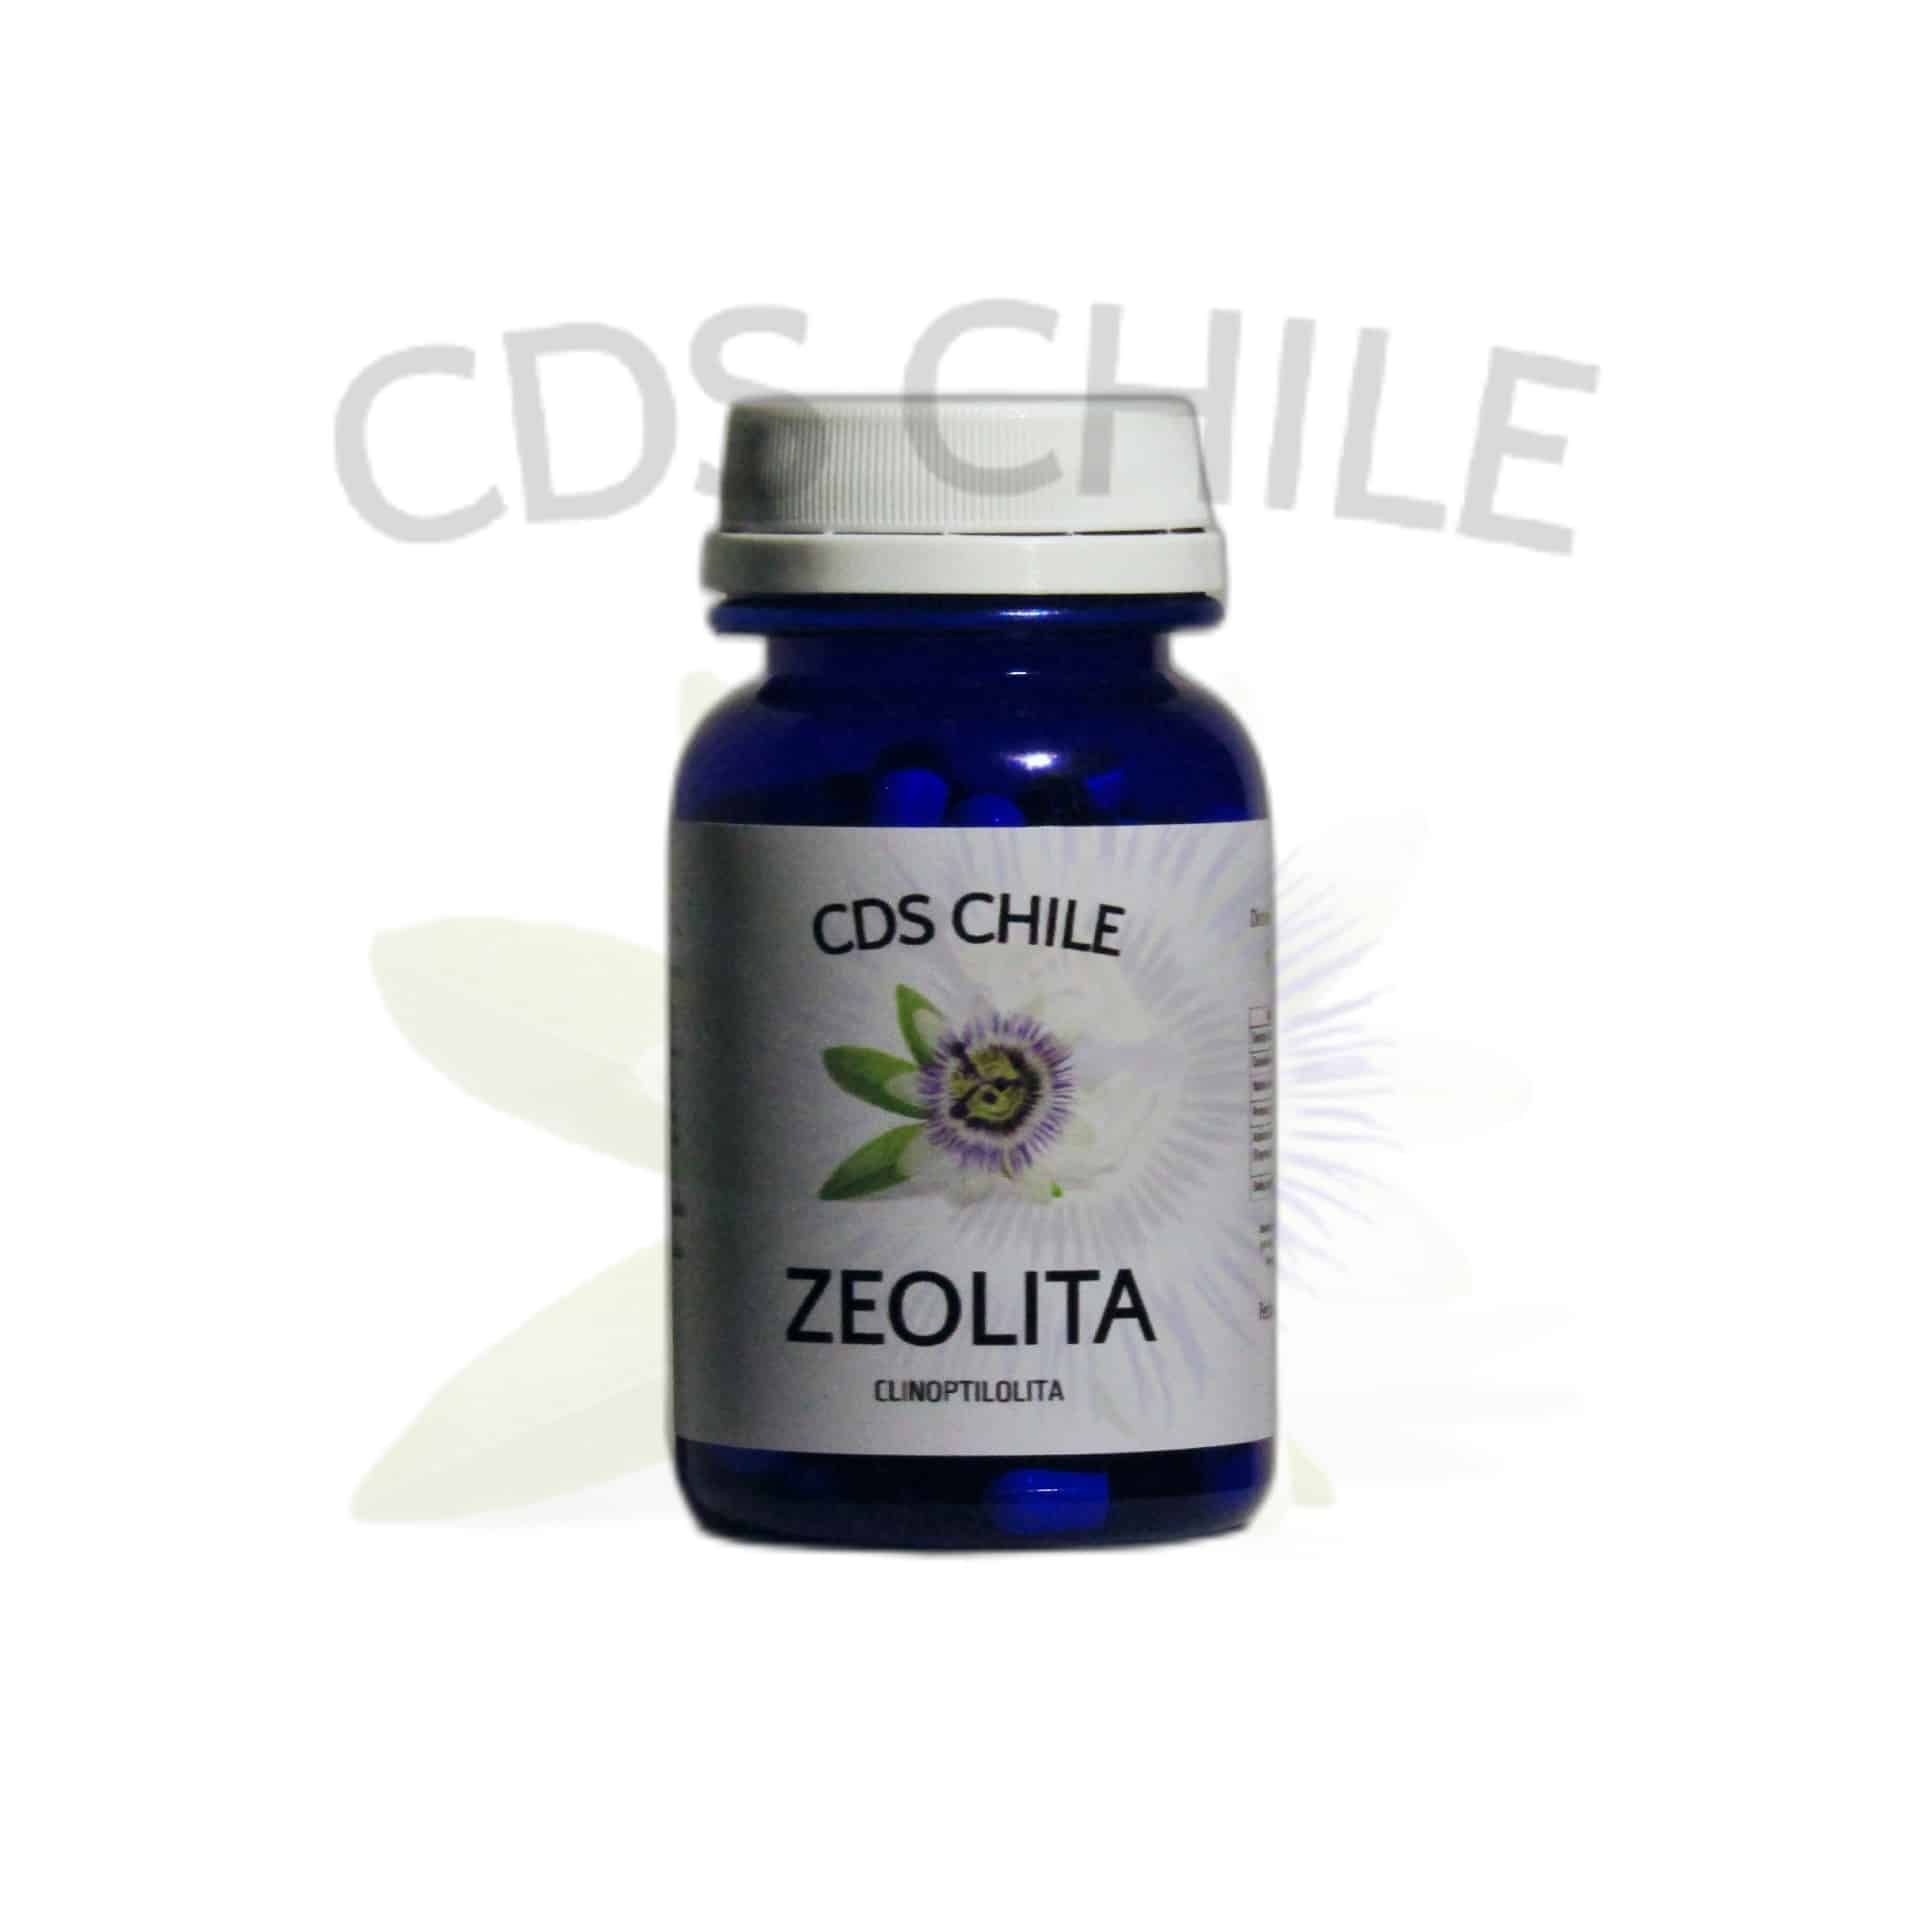 Zeolita Micronizada Clinoptilolitia